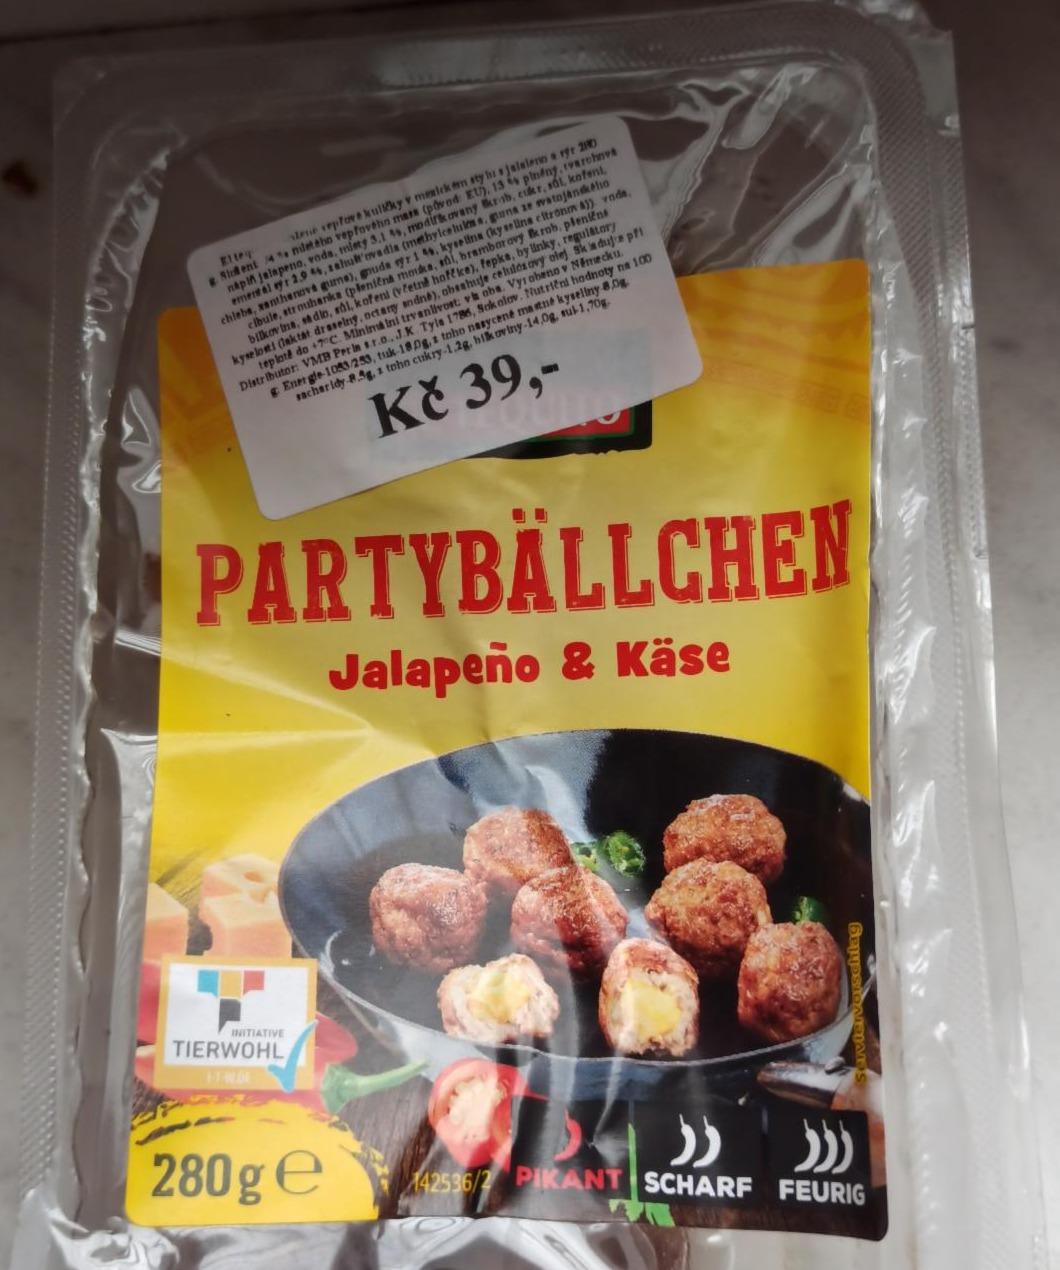 Partybällchen Jalapeño & Käse nutriční hodnoty - kalorie, a kJ